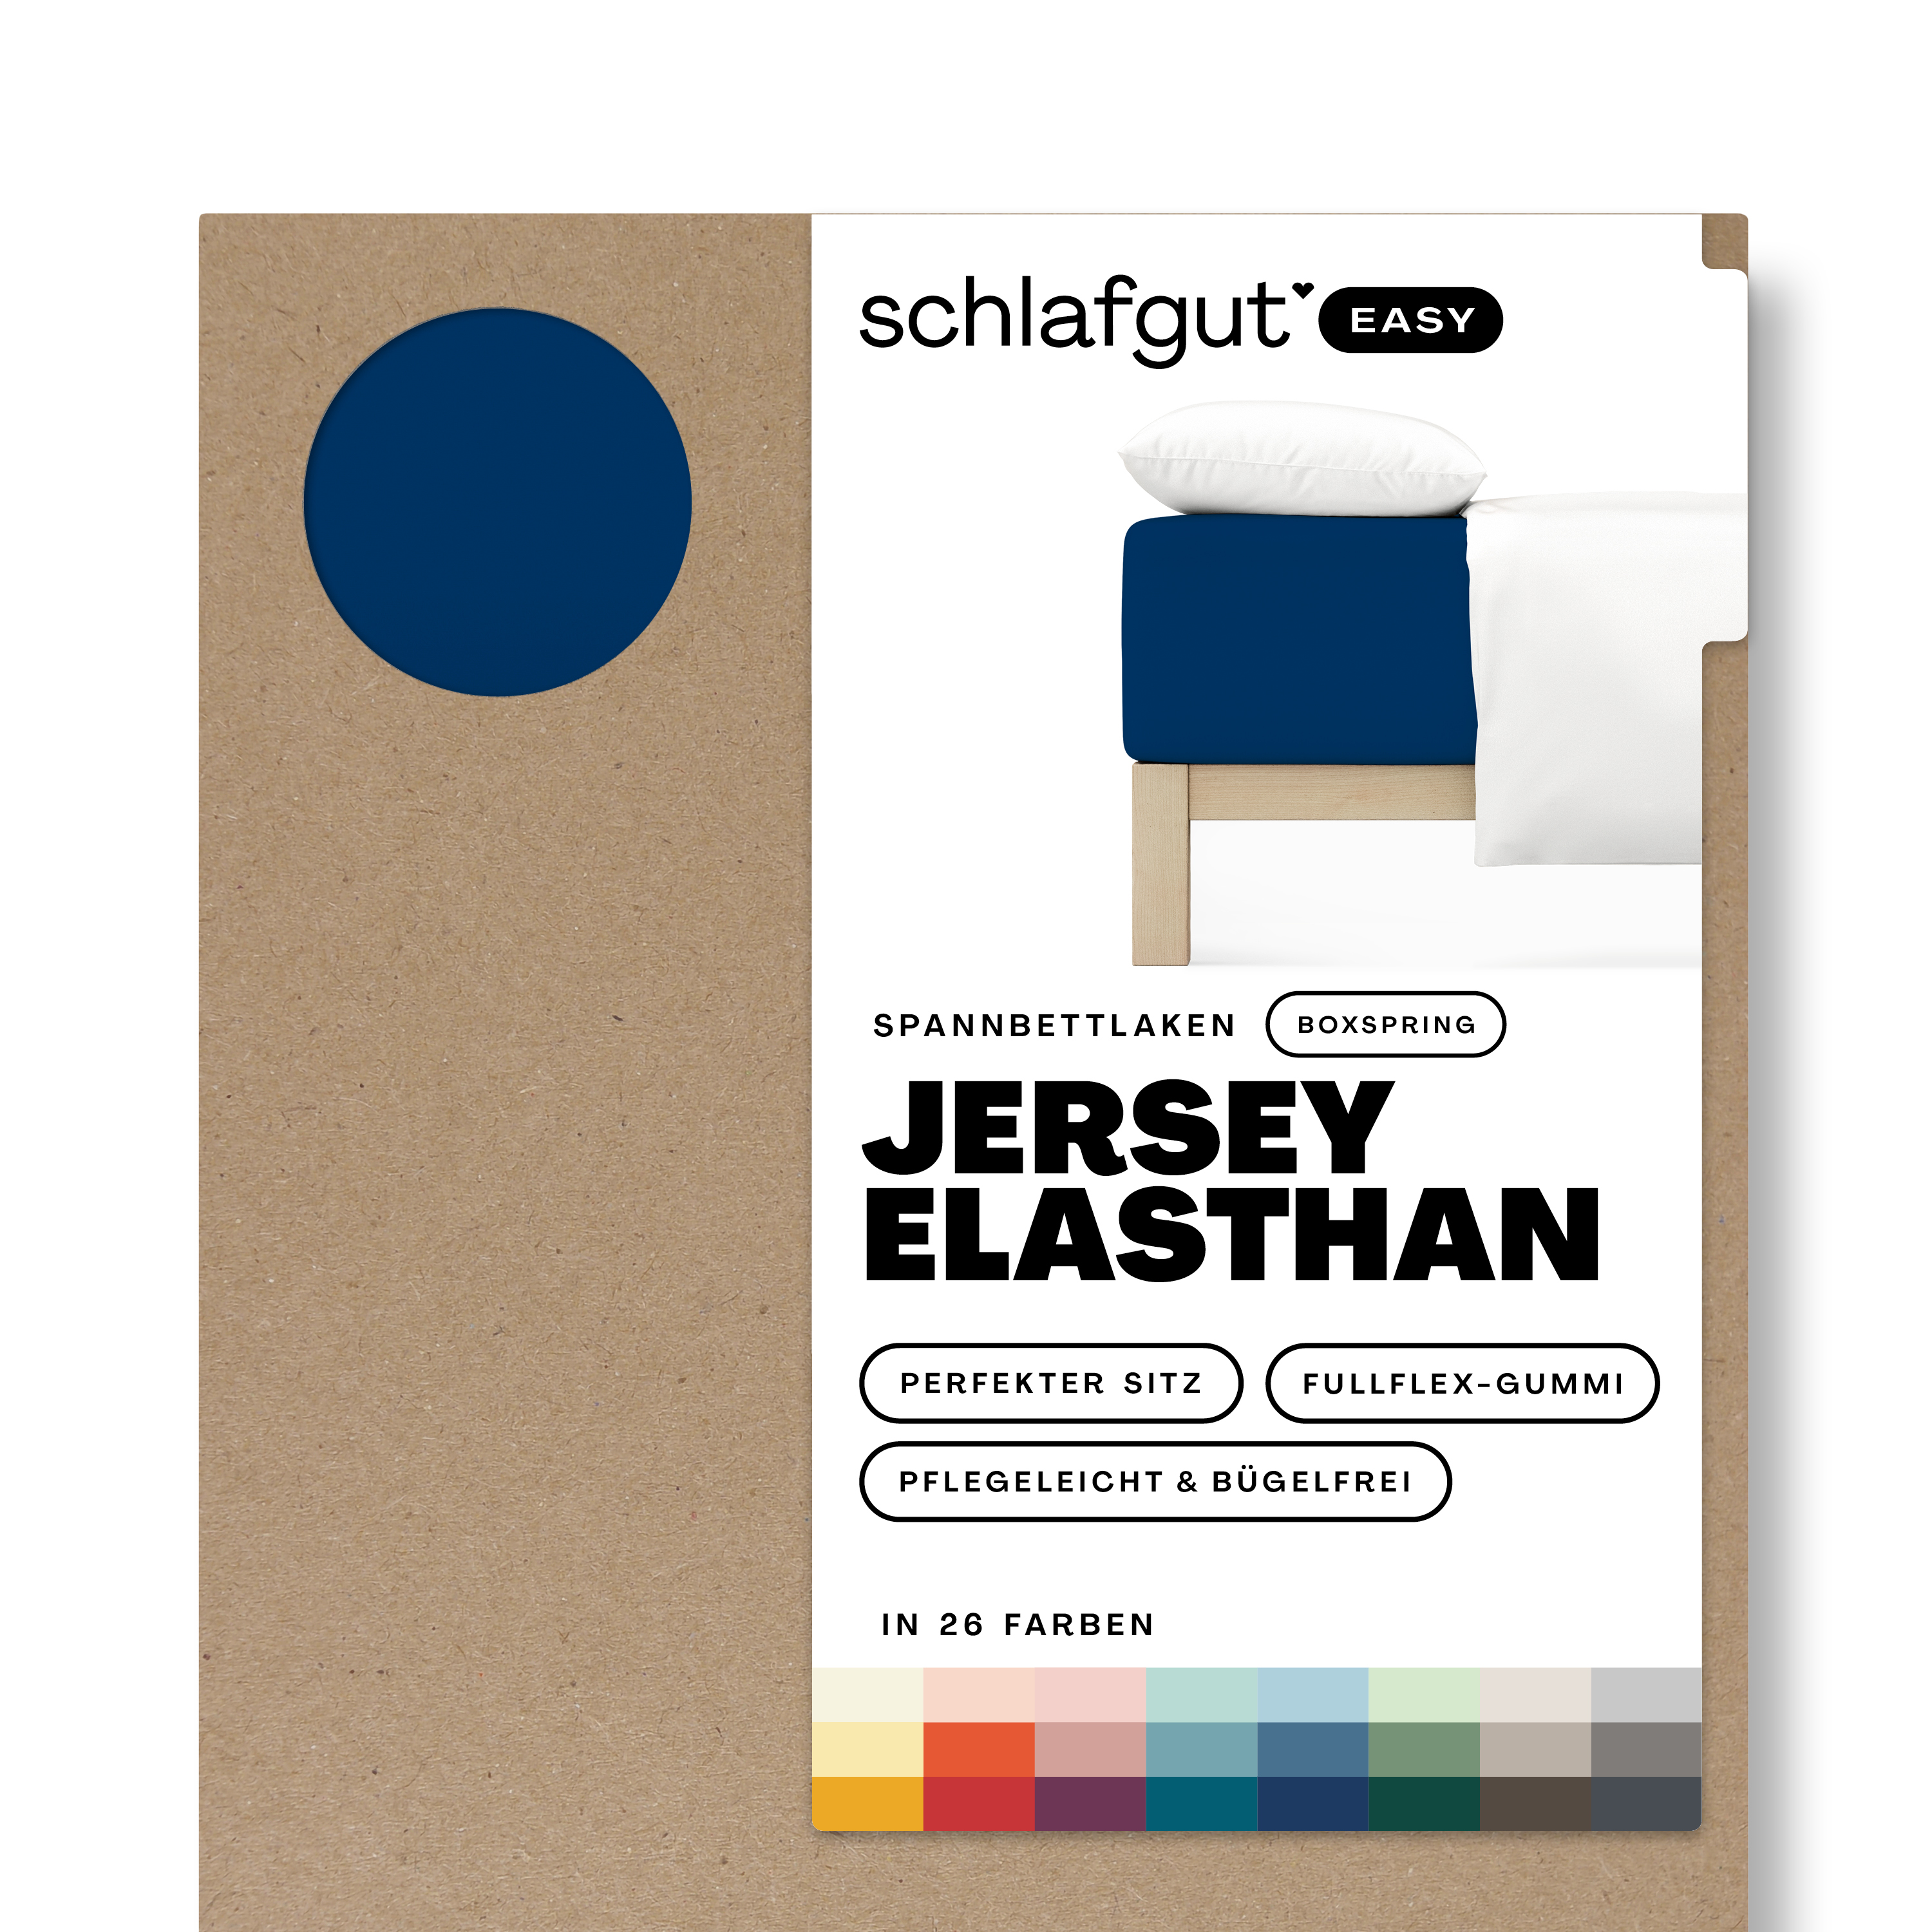 Das Produktbild vom Spannbettlaken der Reihe Easy Elasthan Boxspring in Farbe blue deep von Schlafgut